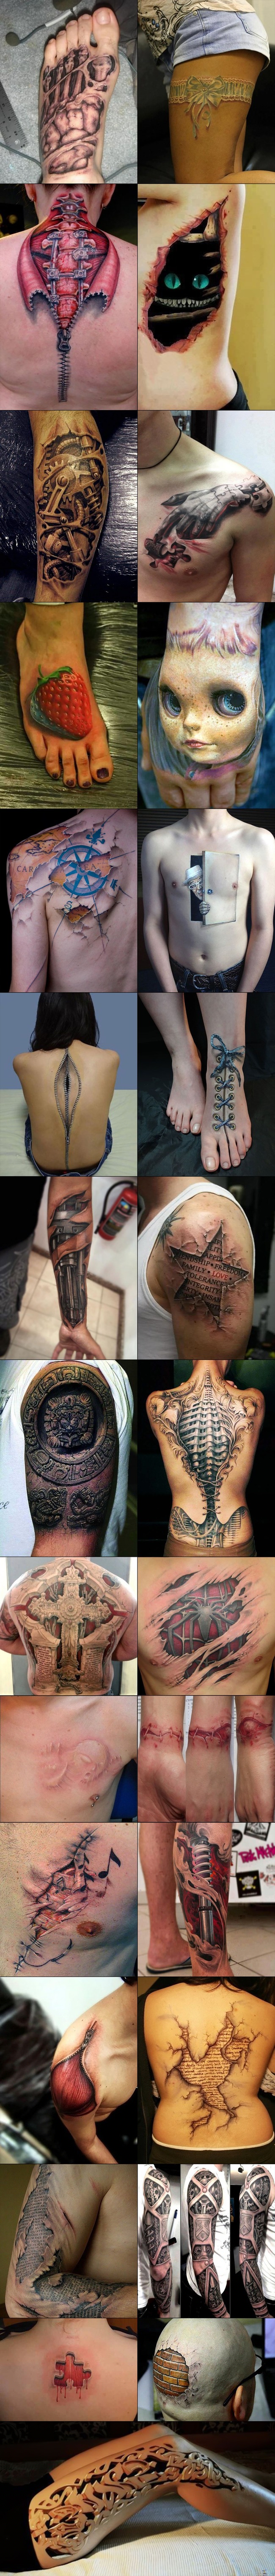 3D Tattoos